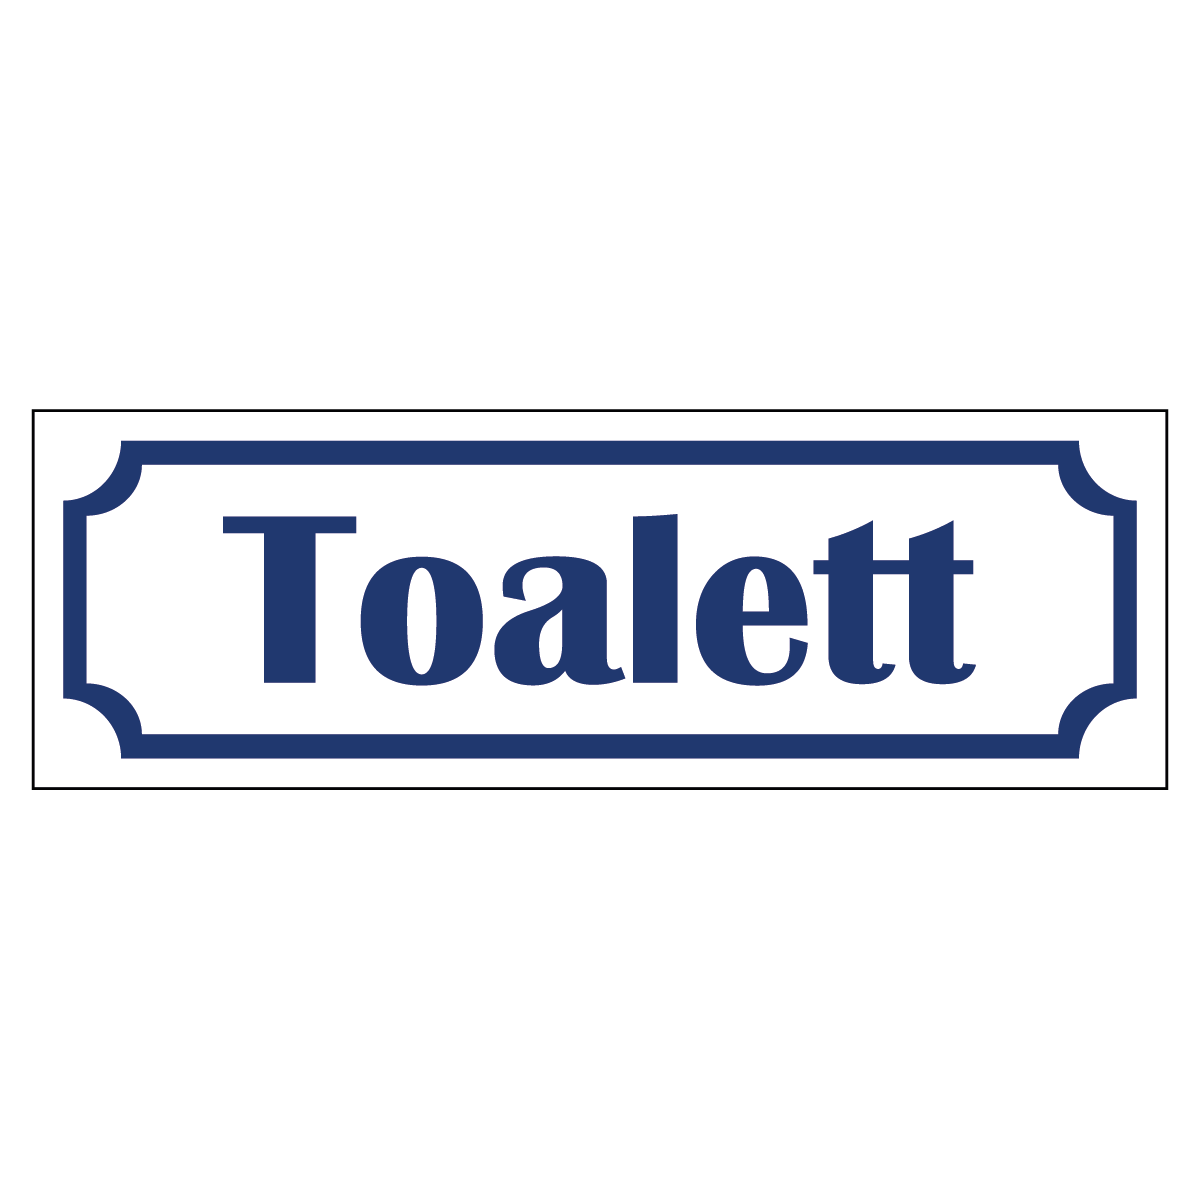 Toalett - Skylt - 150x50mm - Vit - Blå